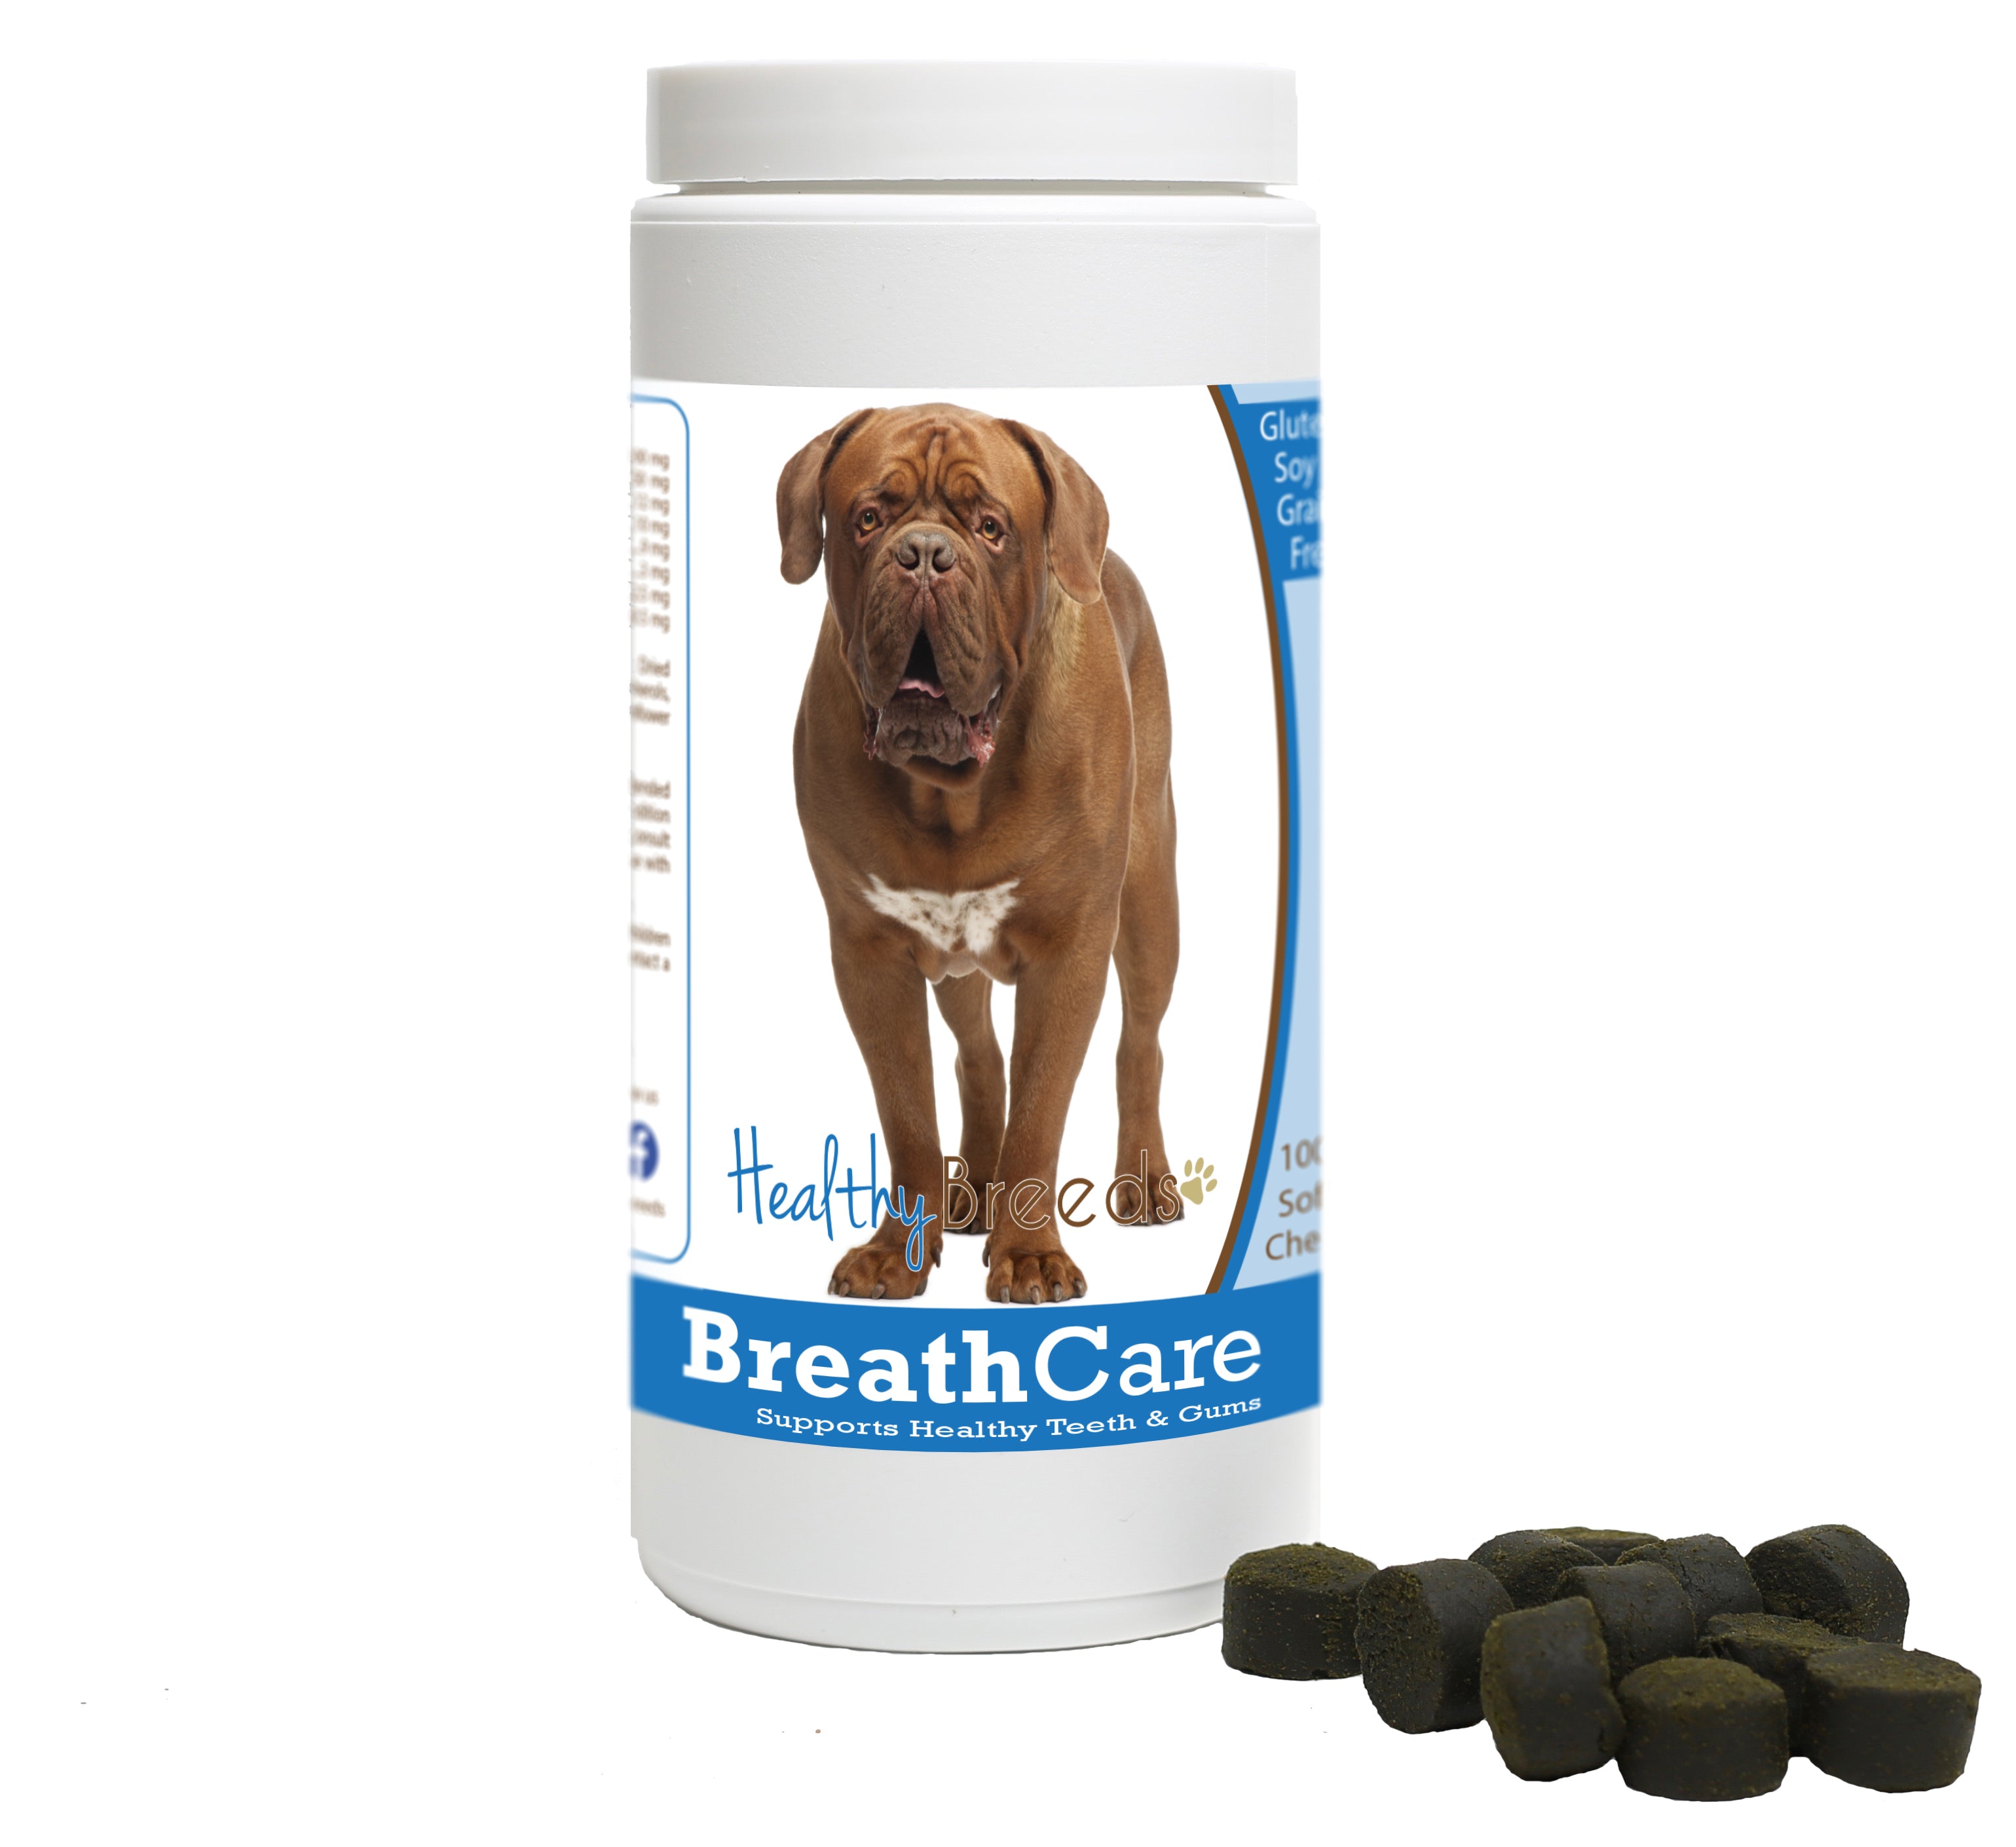 Dogue de Bordeaux Breath Care Soft Chews for Dogs 60 Count